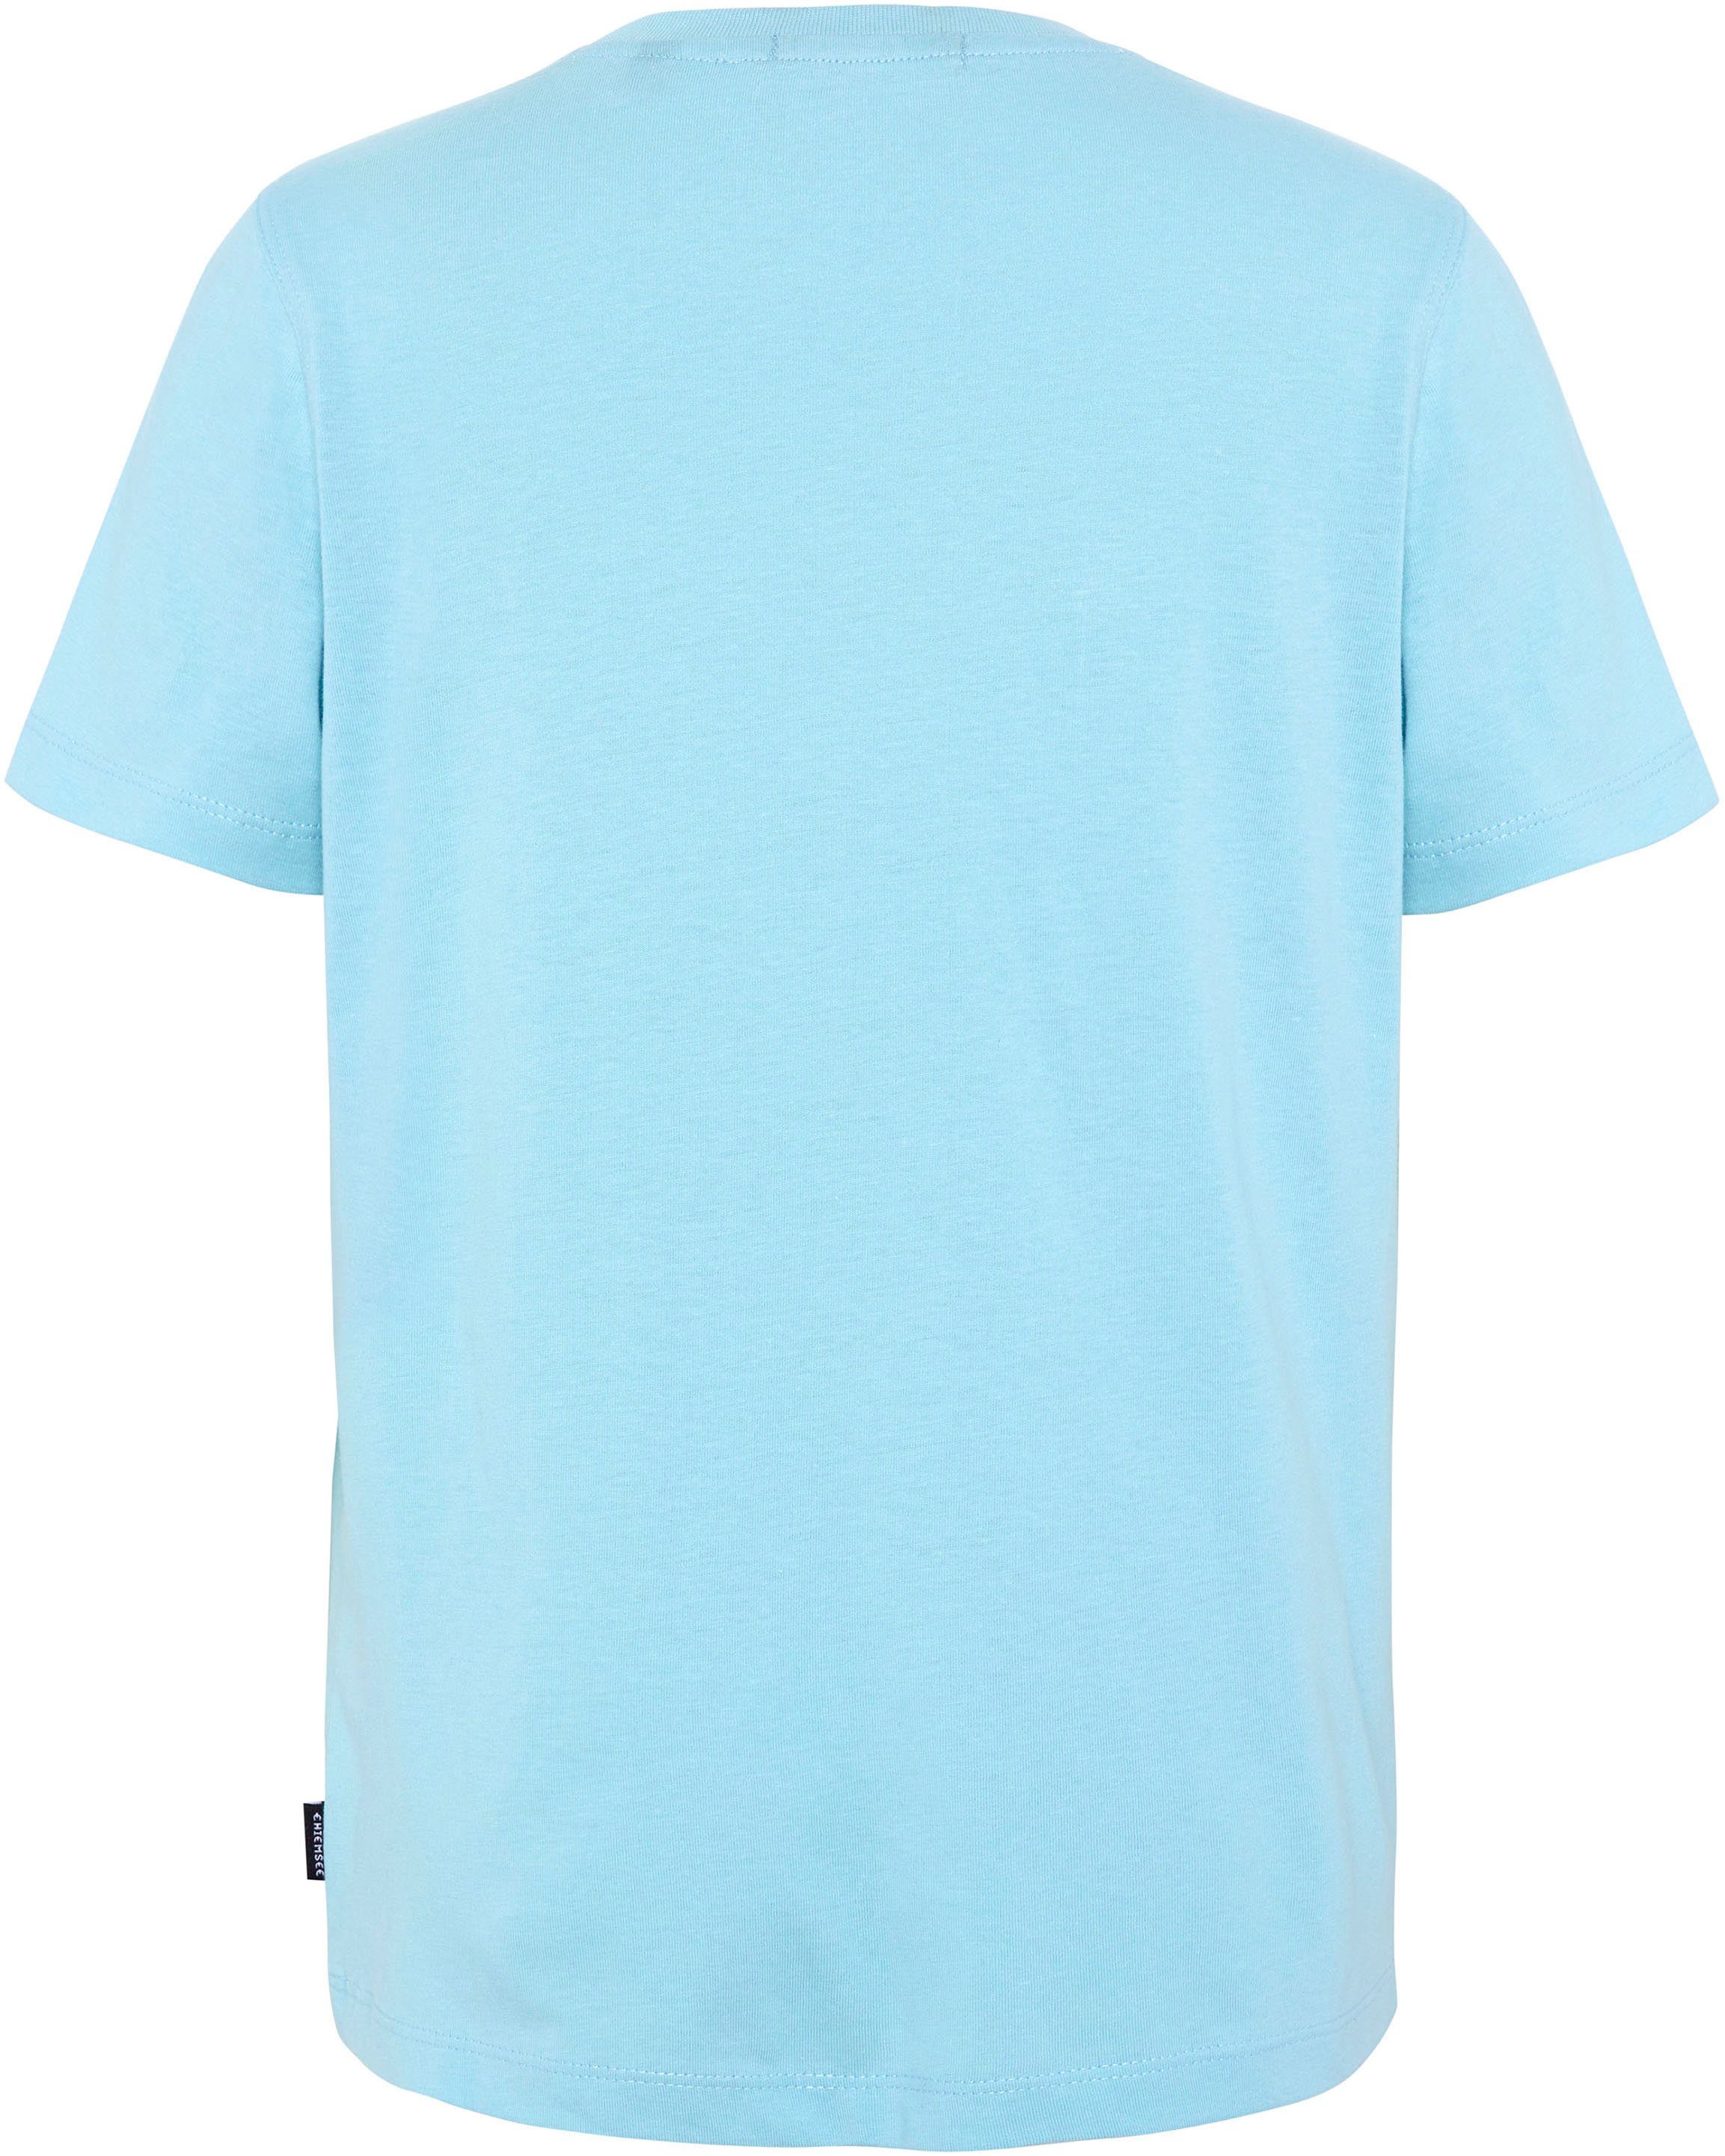 Chiemsee T-Shirt blau